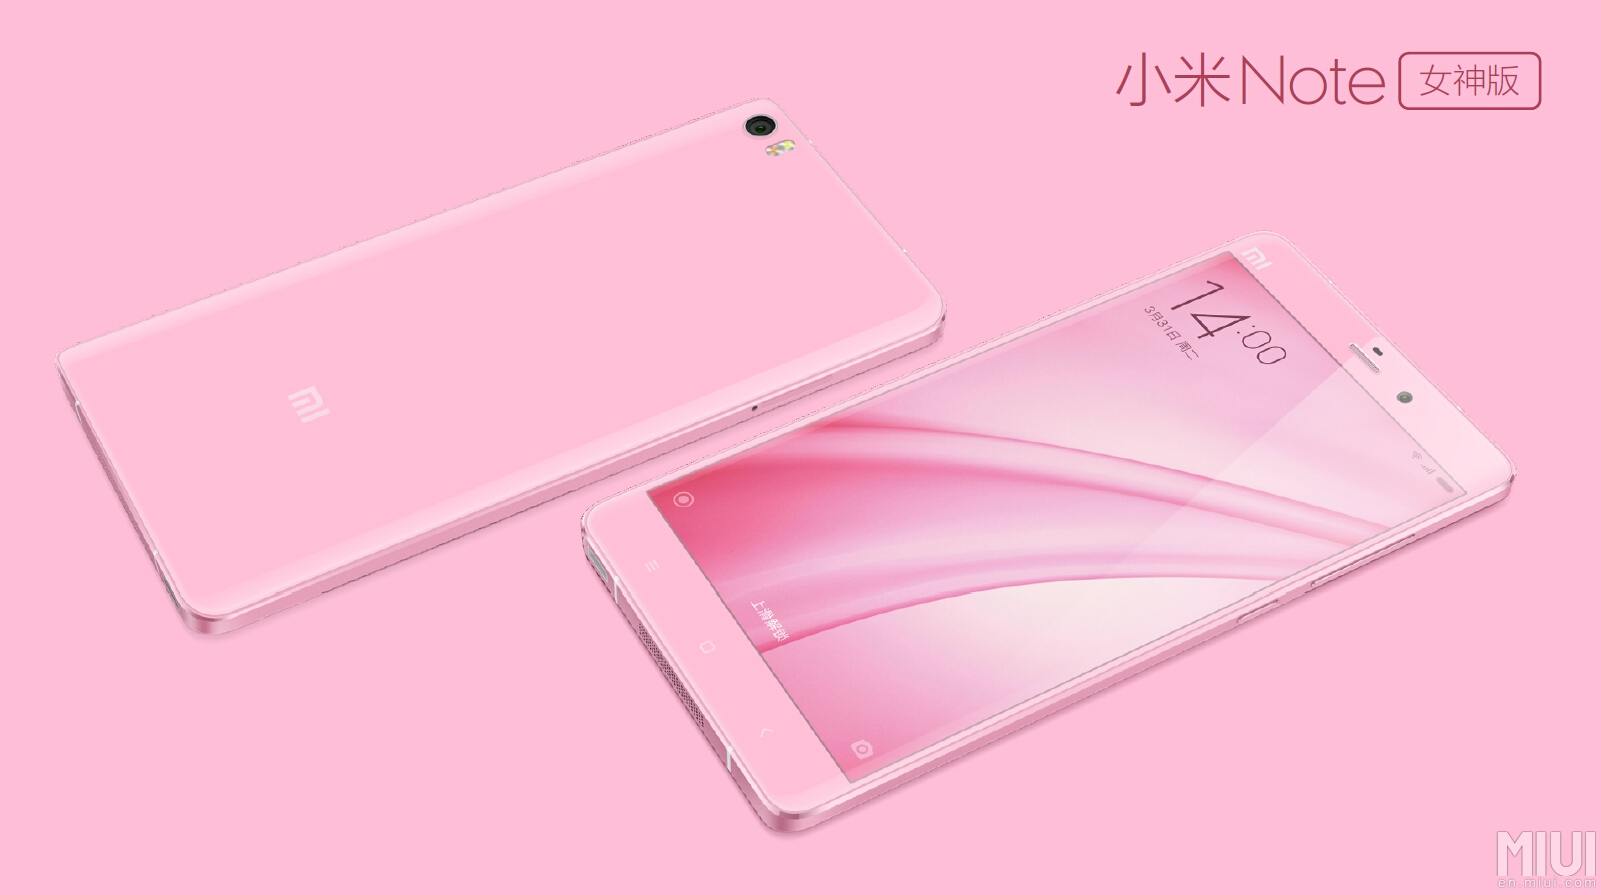 النسخة الوردية من هاتف Mi Note بسعر 403 دولار